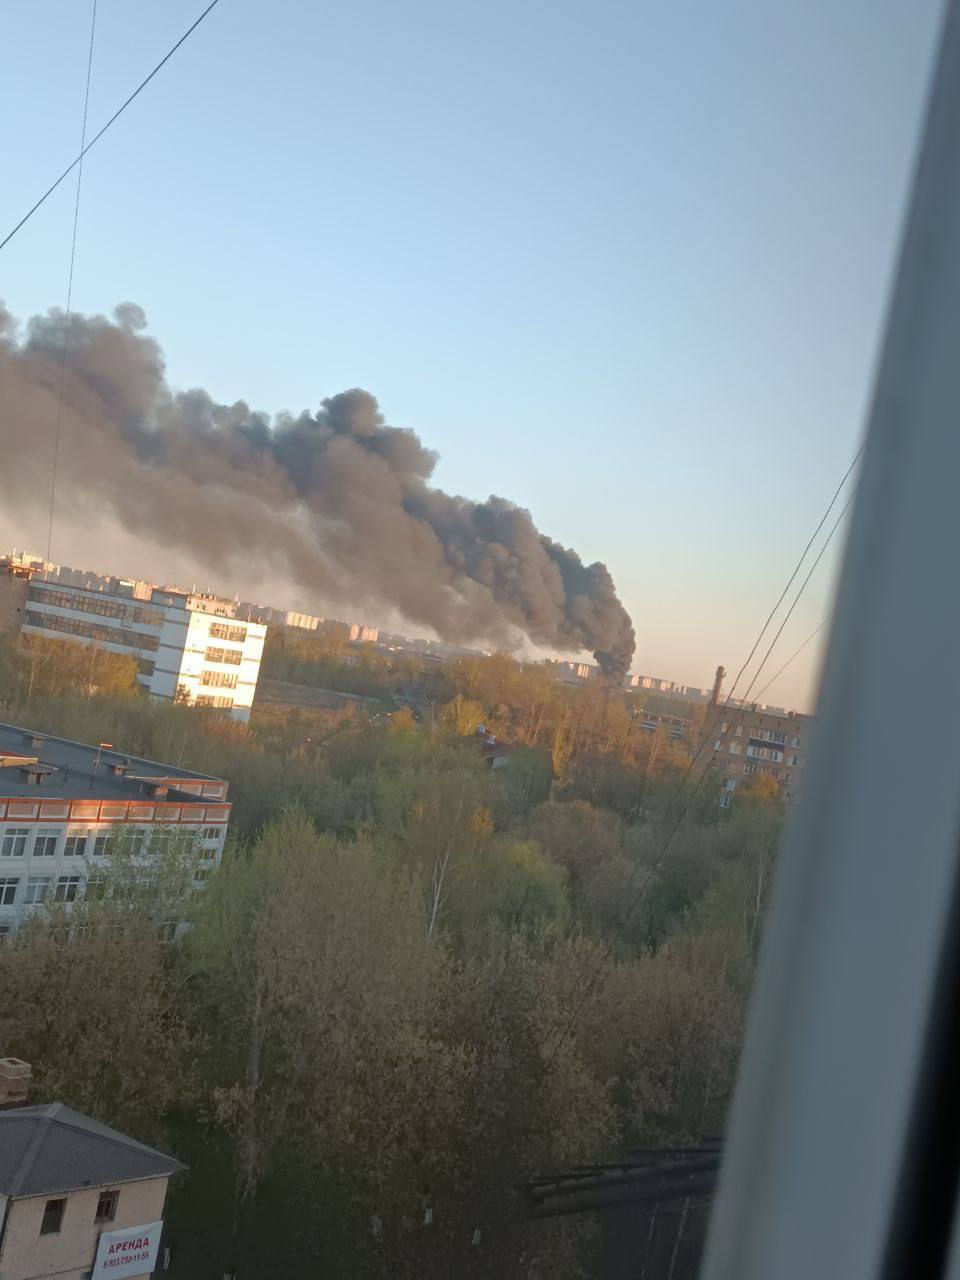 Столб черного дыма виден за несколько километров: под Москвой вспыхнул мощный пожар. Видео